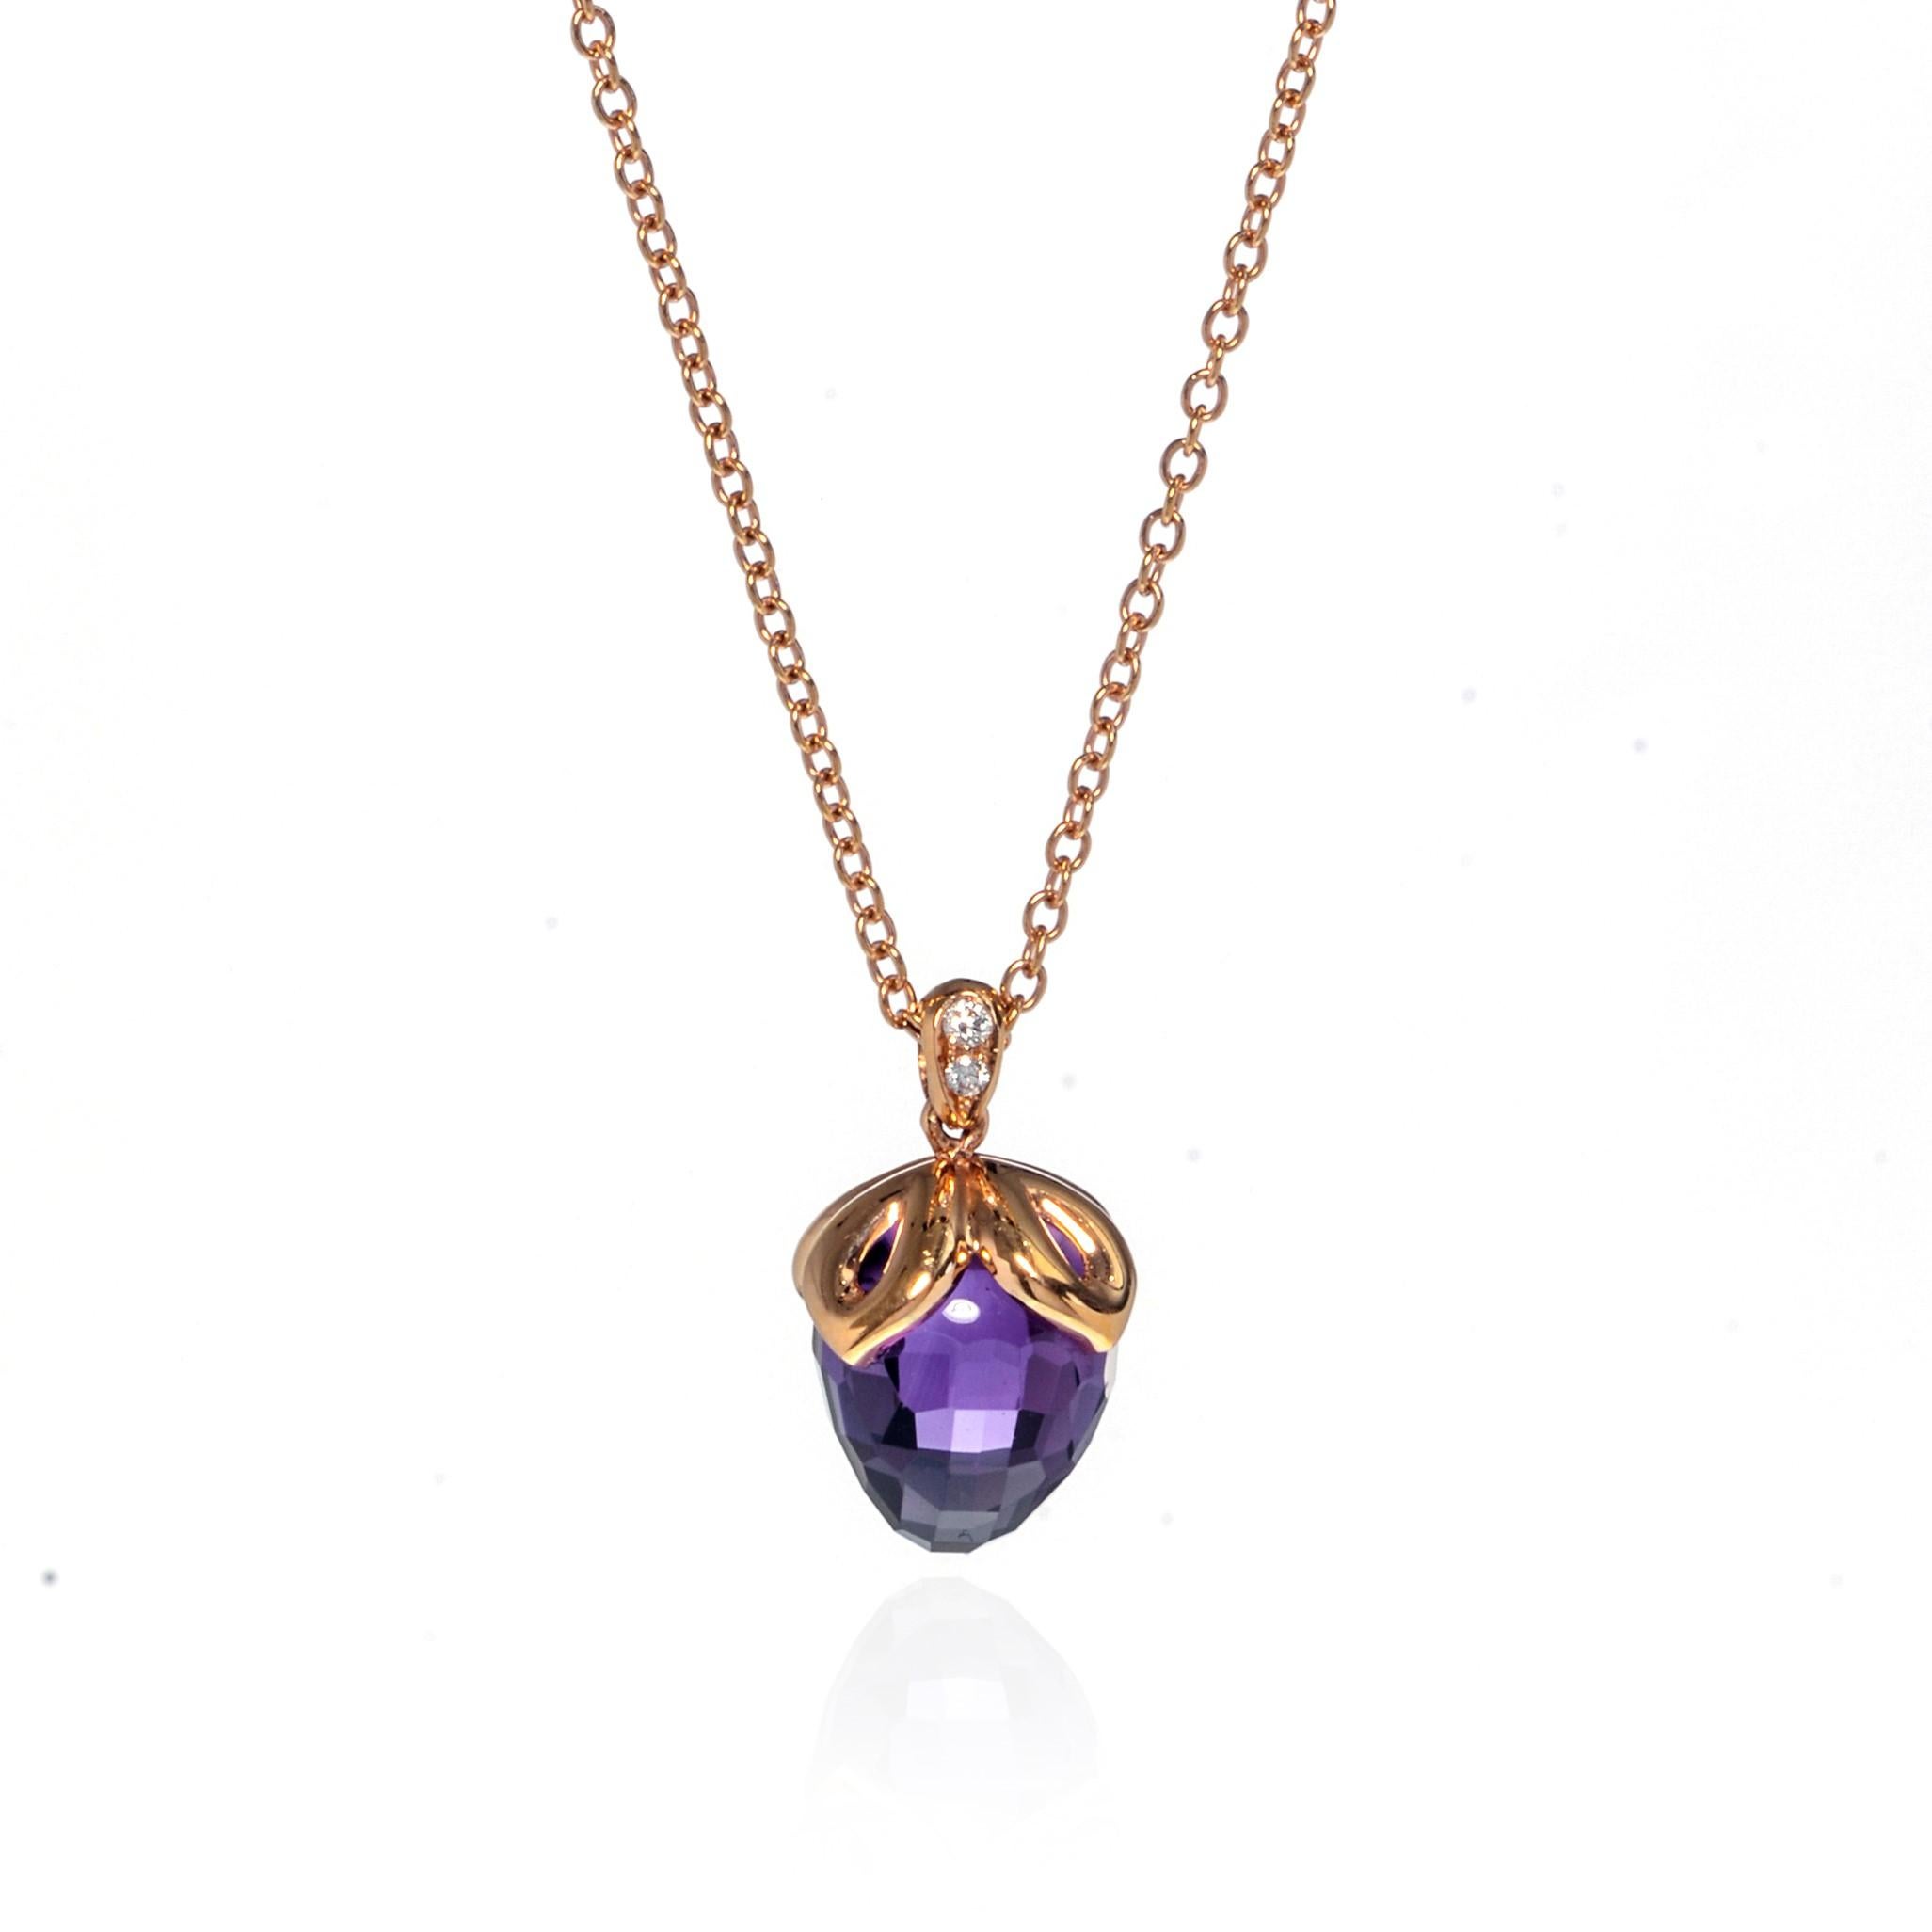 Ce magnifique collier pendentif en améthyste violette et diamant est réalisé en or rose 18 carats. La bague est sertie de minuscules diamants de 0,03cttw. Poids de l'améthyste : 7.80cts. Taille du pendentif : 16,00 mm. Longueur de la chaîne : 17.00